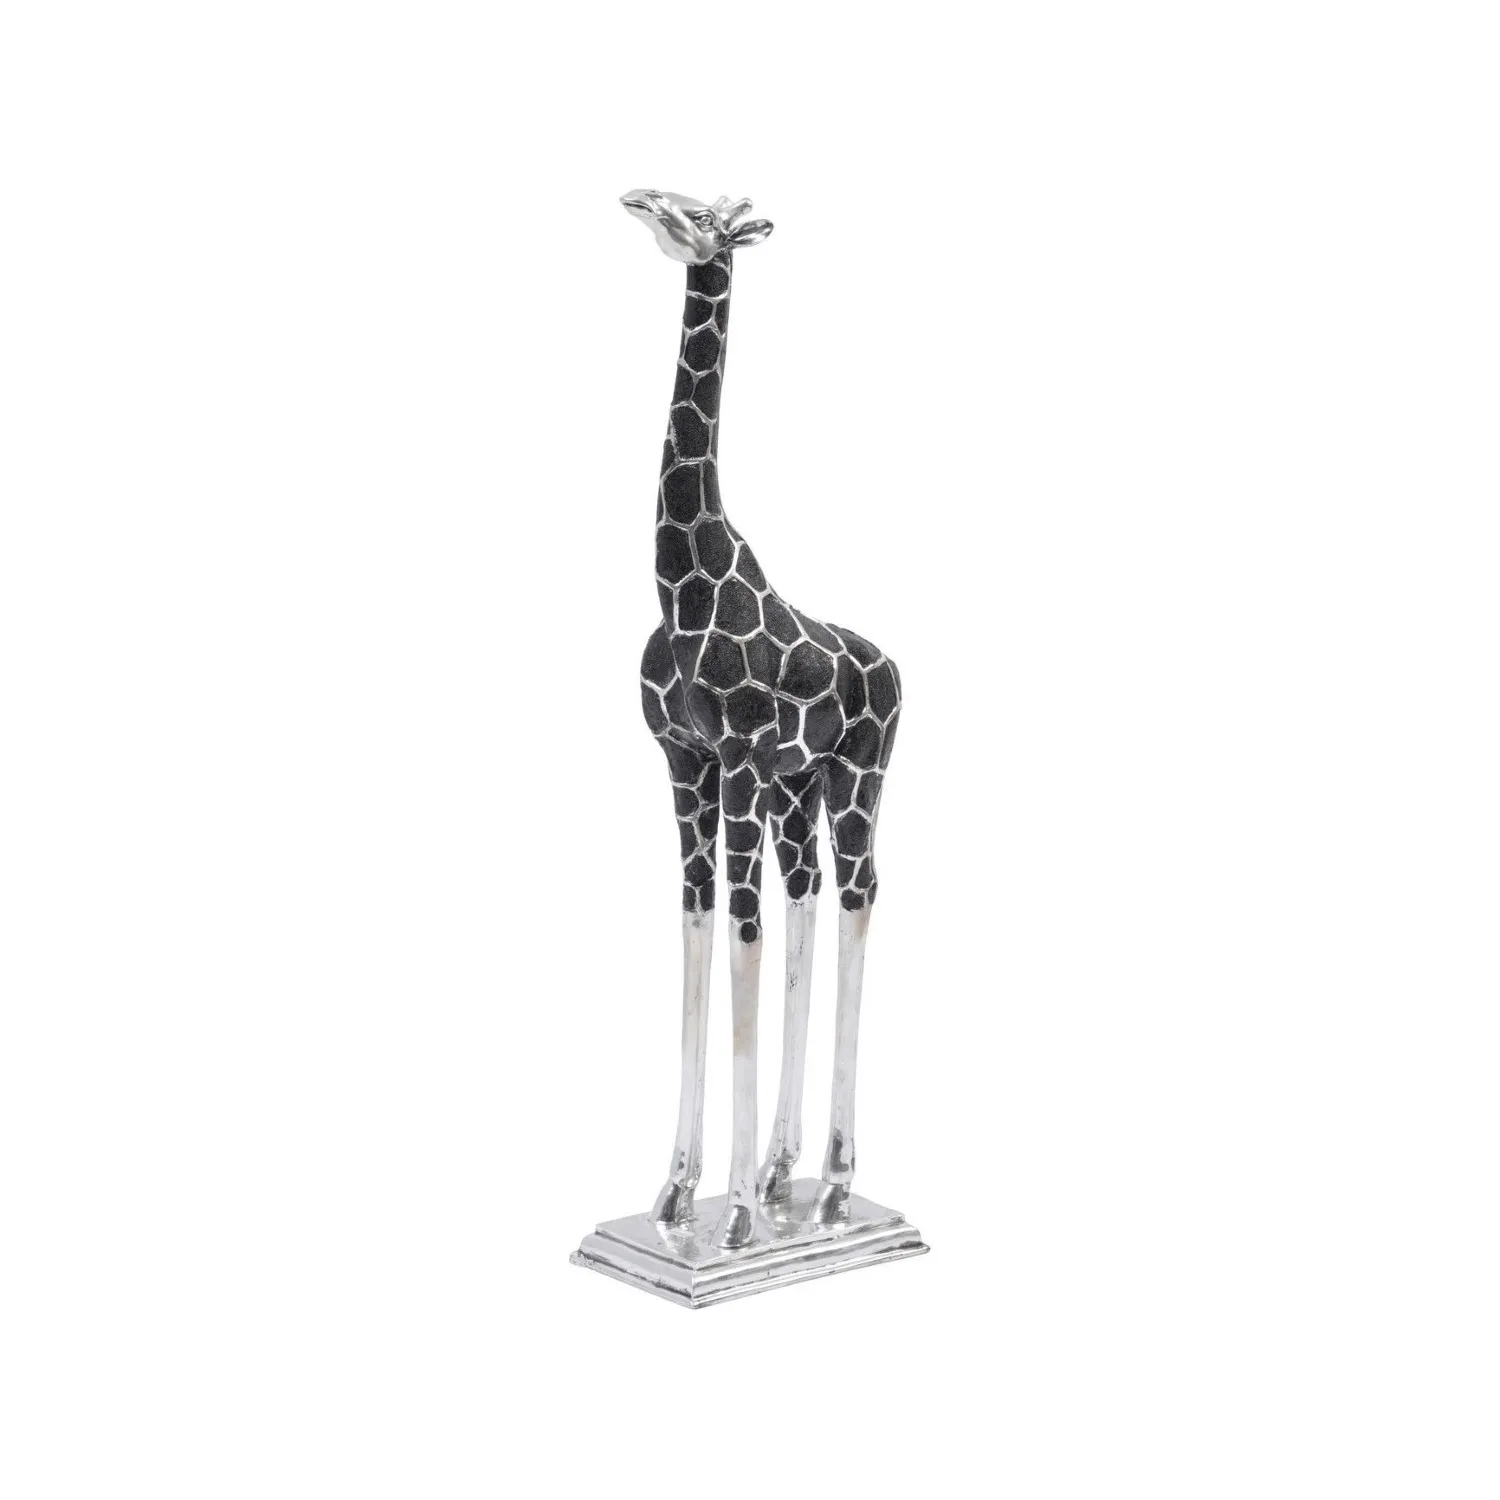 Tall Silver and Black Head Forward Giraffe Sculpture